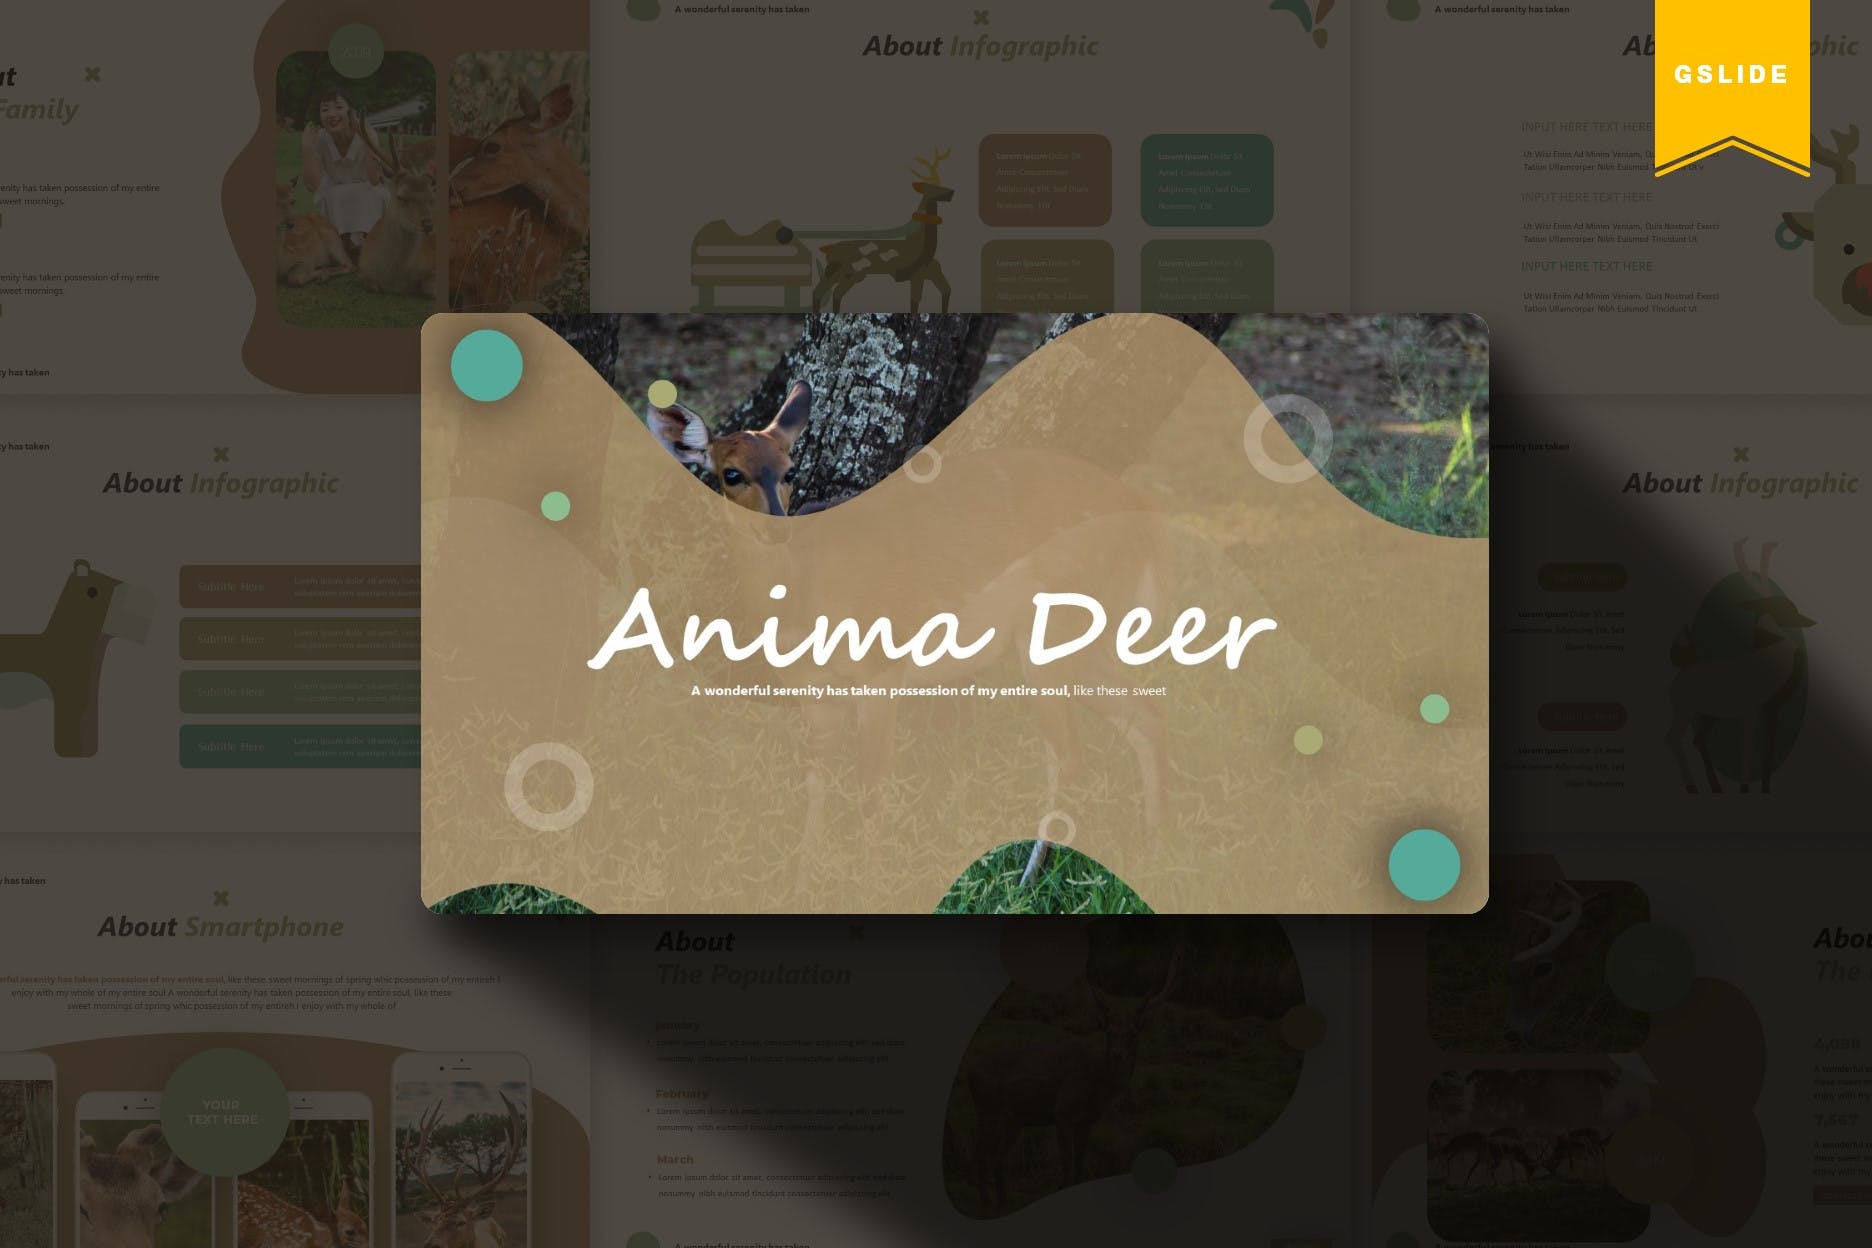 卡通小鹿儿童主题非凡图库精选谷歌演示模板 Anima Deer | Google Slides Template插图